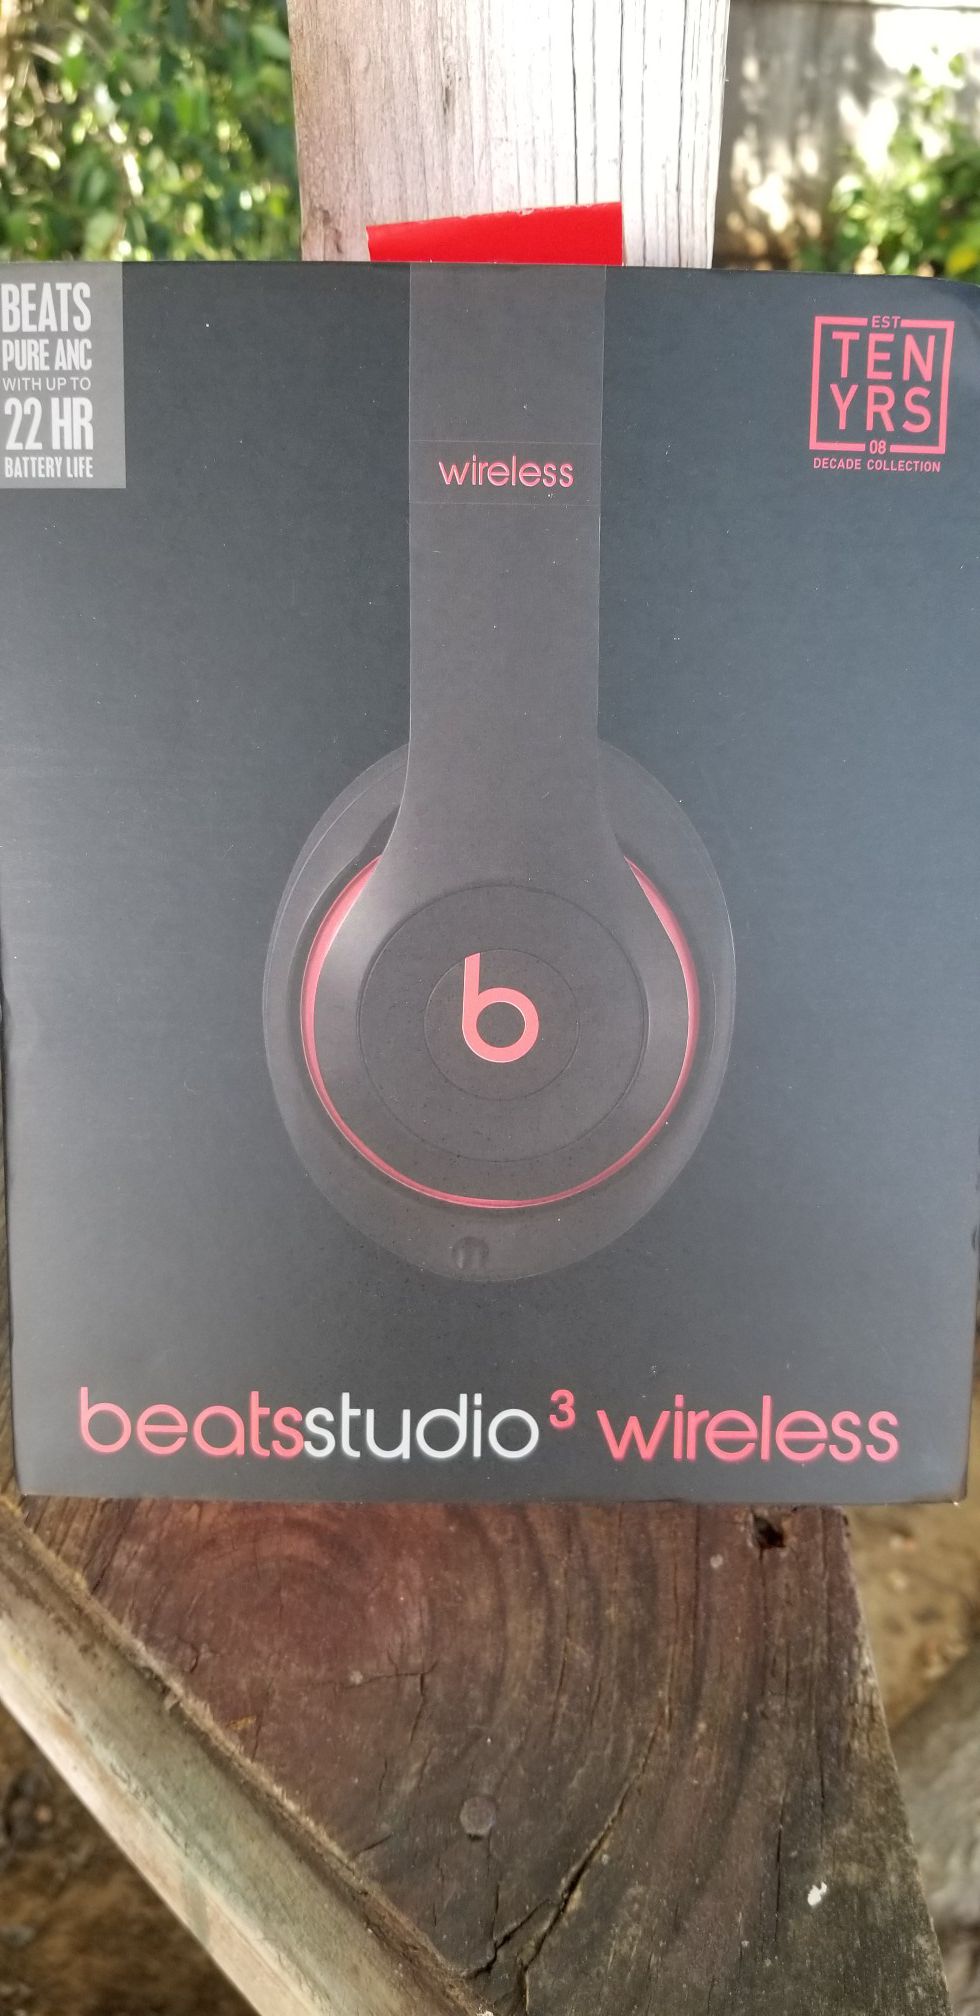 Beats Studio 3 wireless headphones!